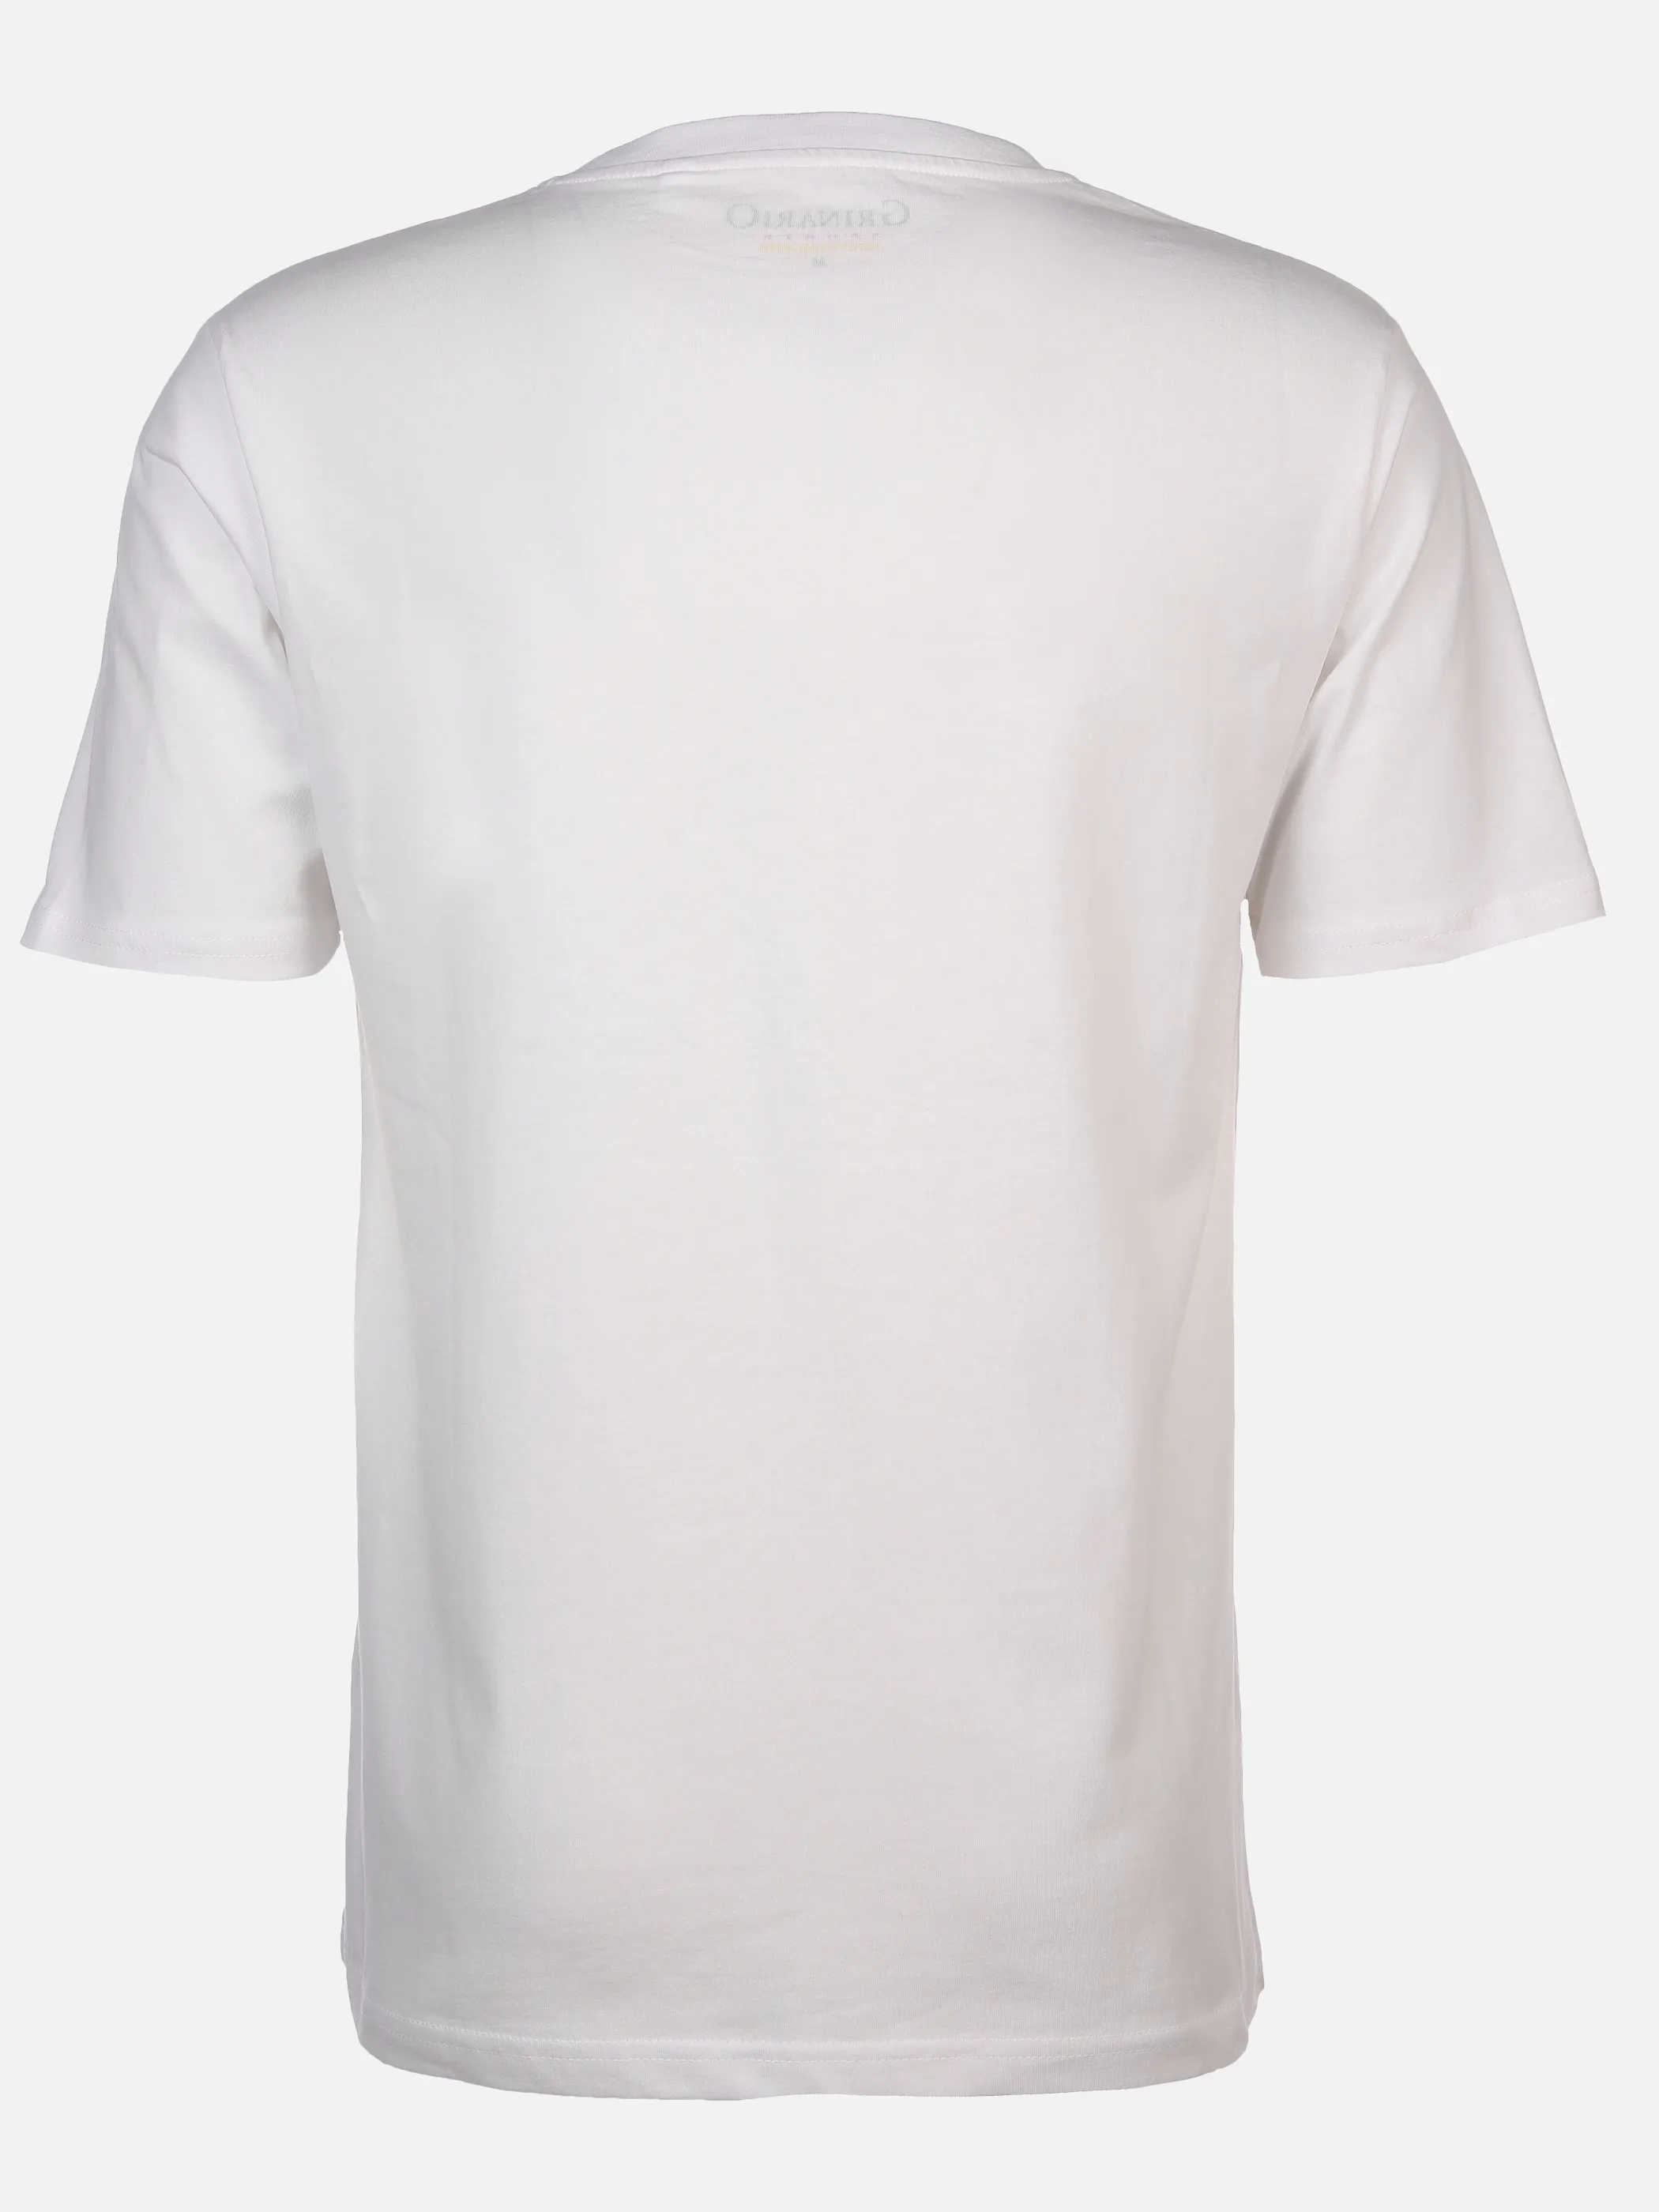 Grinario Sports Unisex T-Shirt EM24, Deutschland Weiß 889226 FP 2